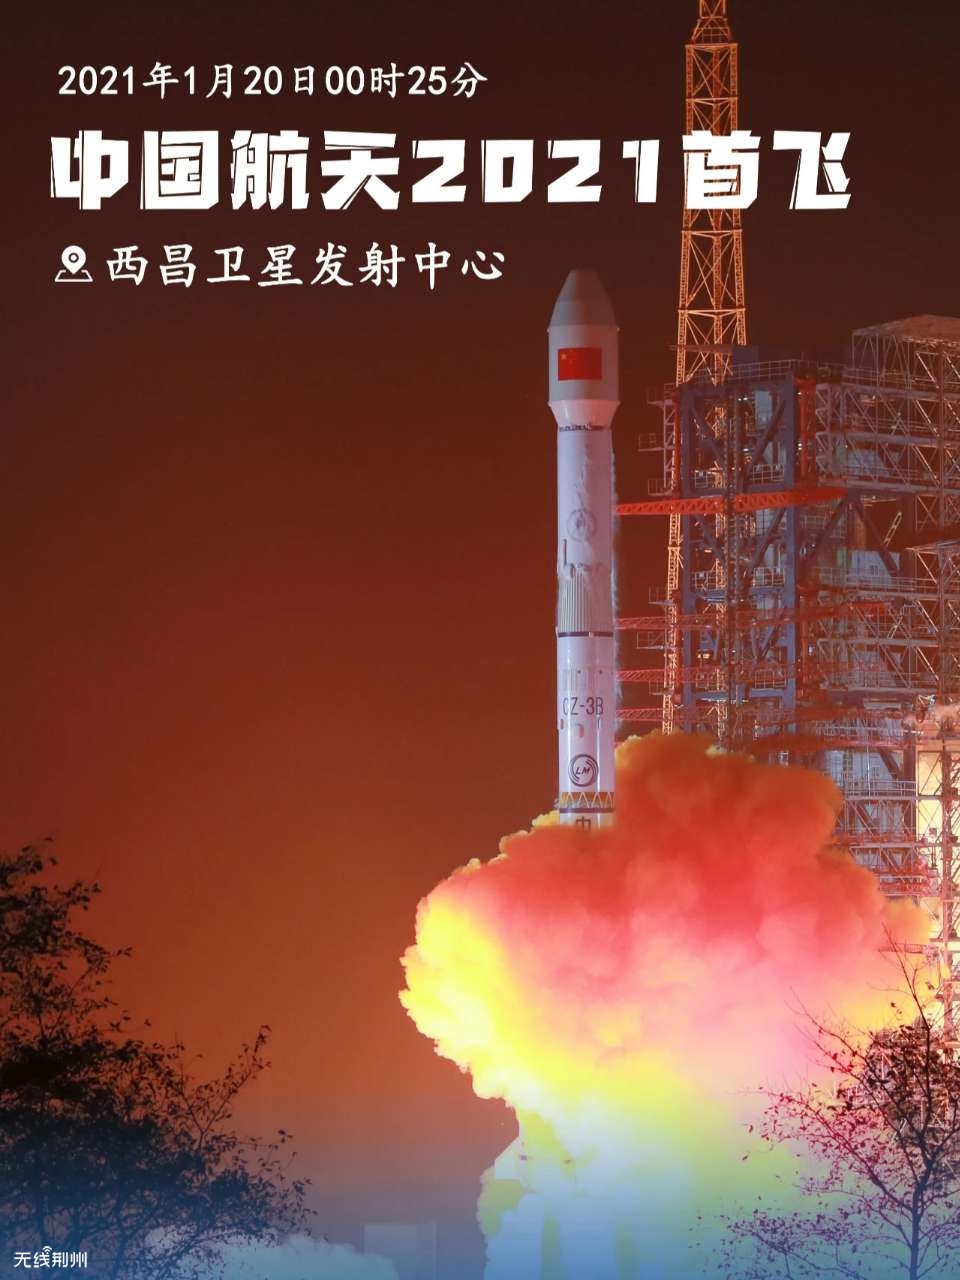 中国航天发射2021年迎来开门红